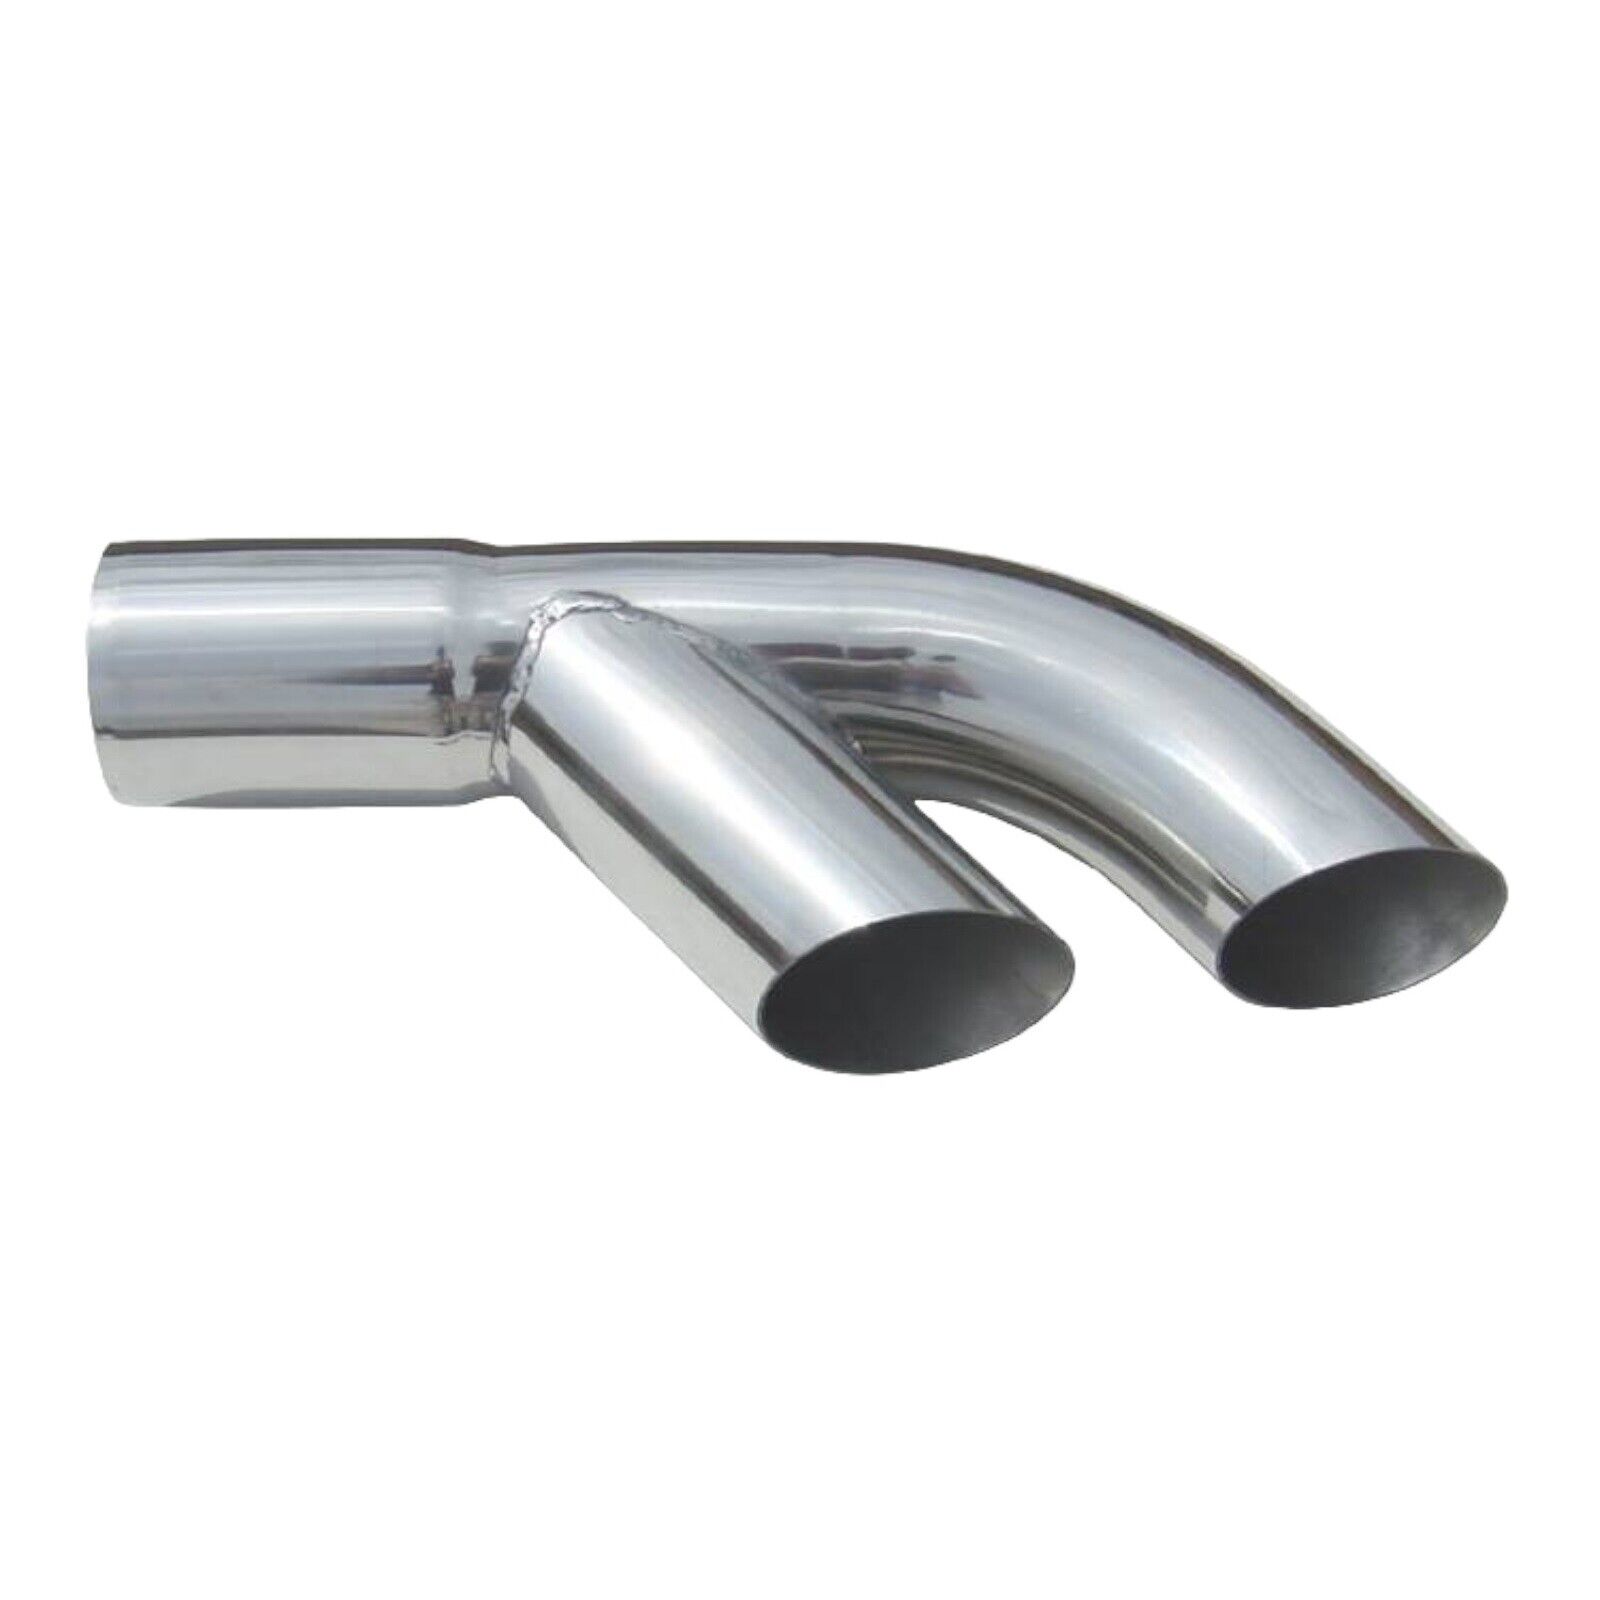 Pypes Exhaust Splitter Tips Stainless Steel 2.5